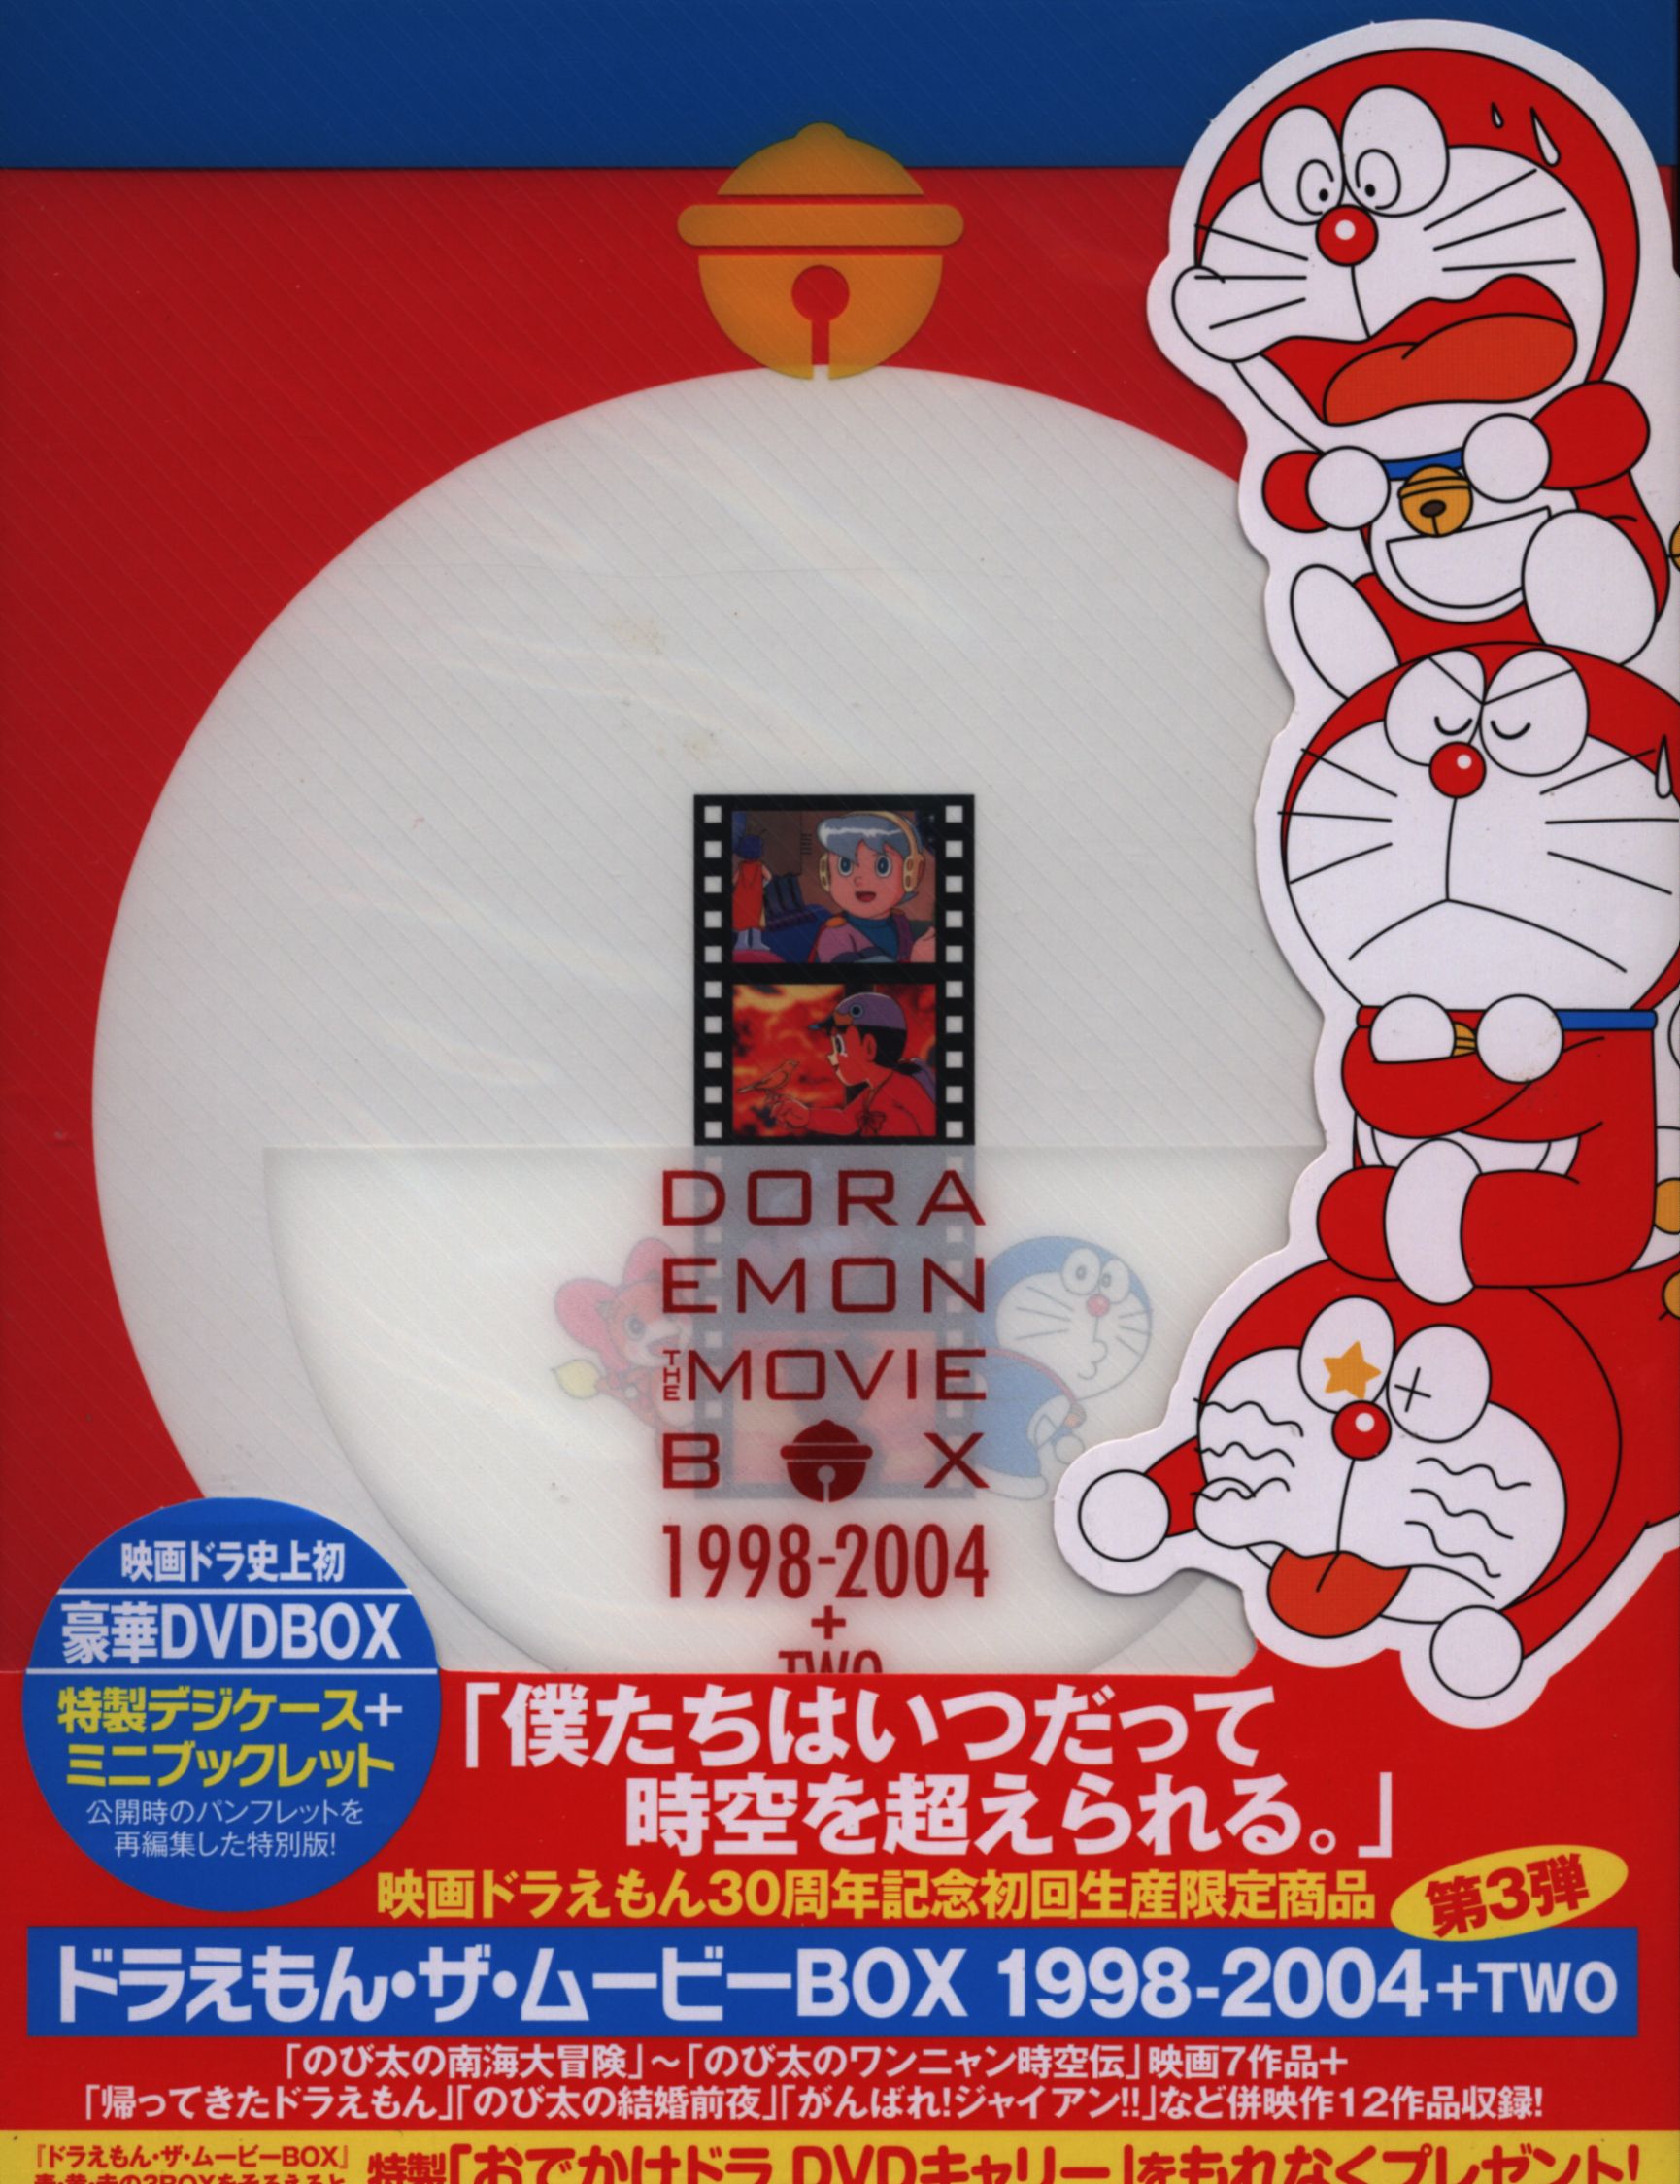 アニメDVD DORAEMON ザ・ムービーBOX 1998-2004+TWO [初回生産限定版